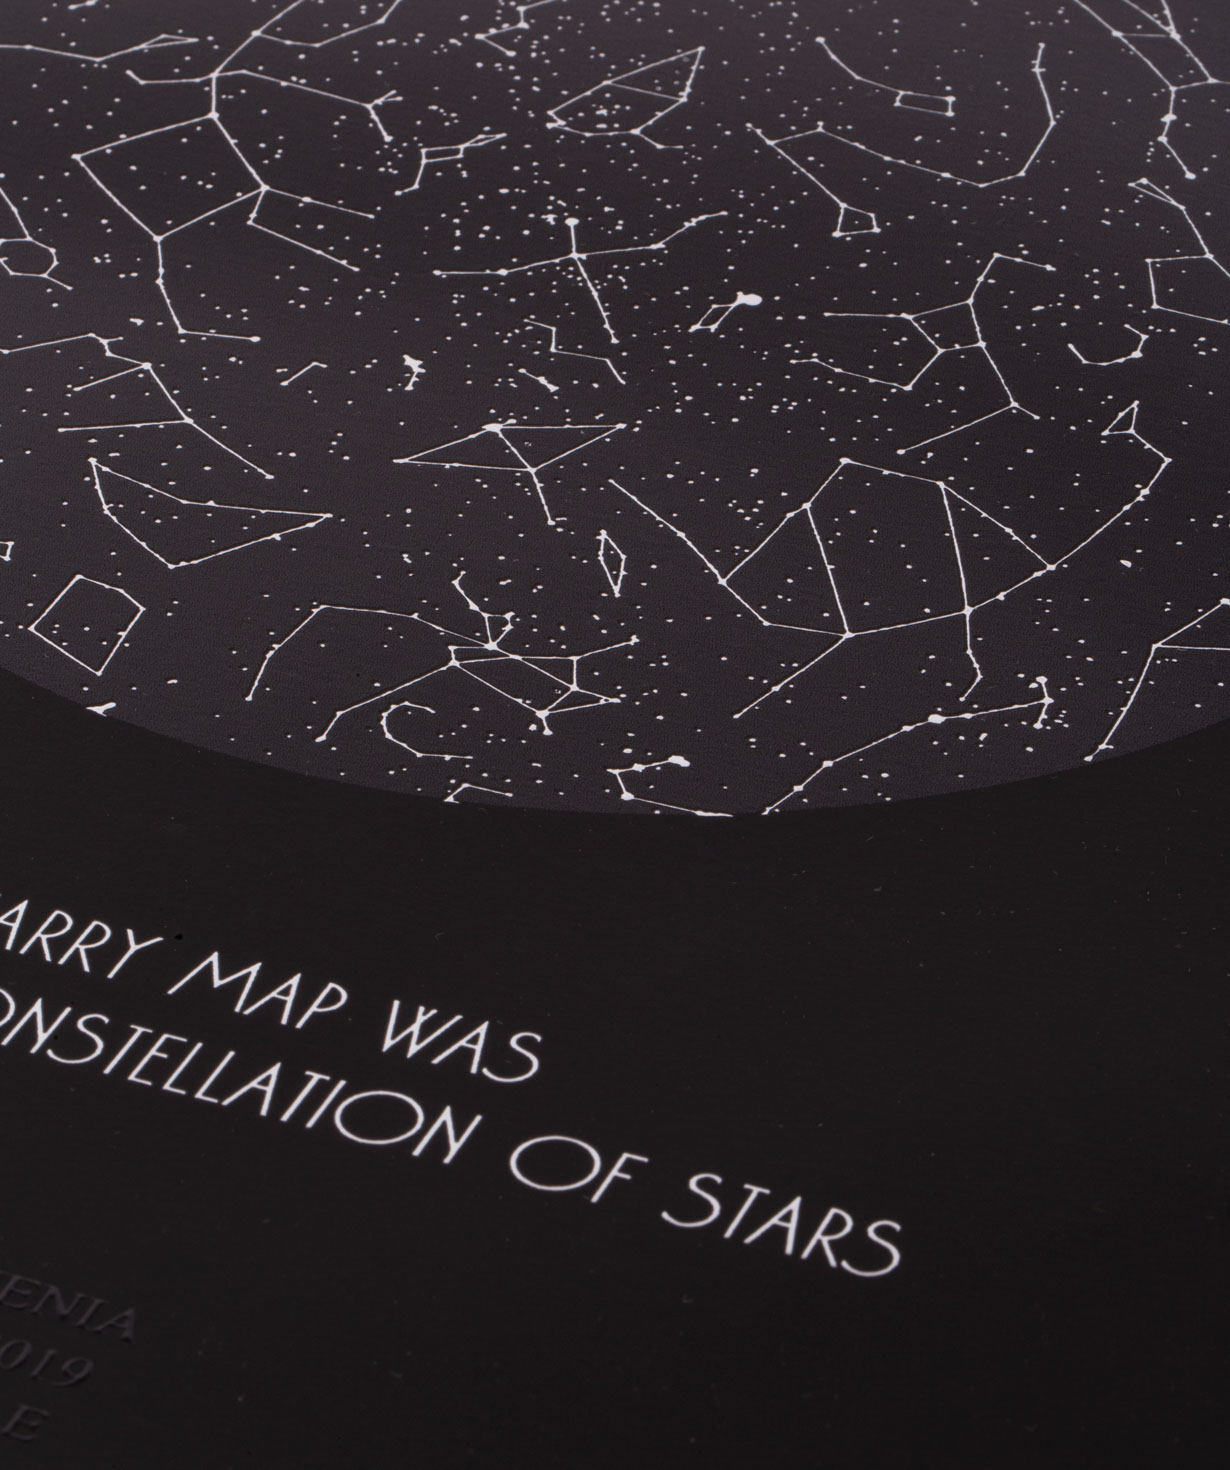 Անհատական աստղային քարտեզ A3 Black Edition (Limited)